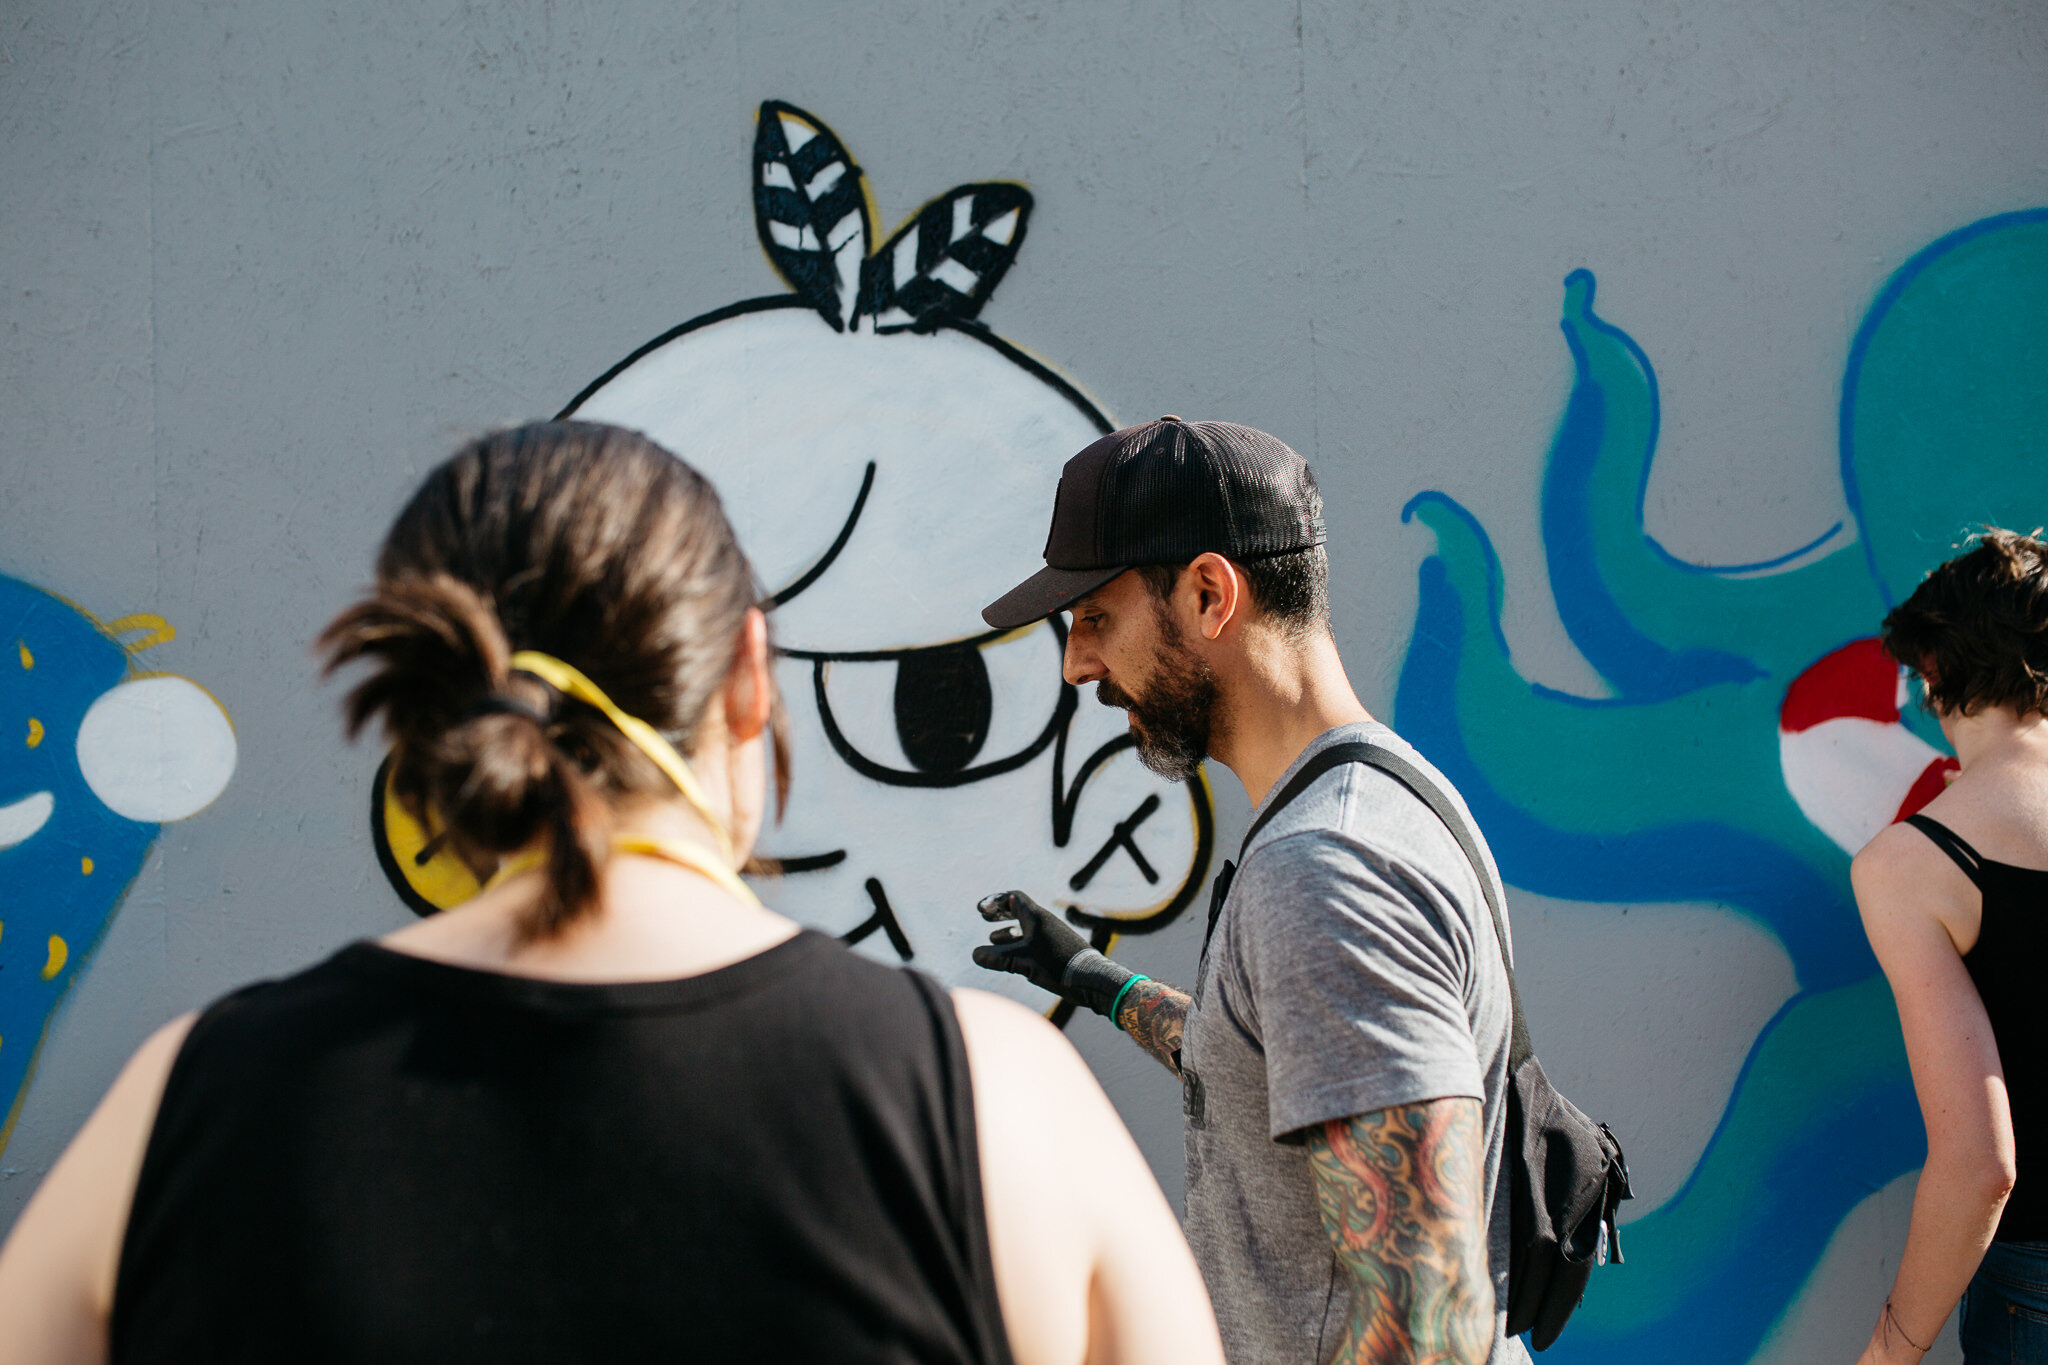 CS_street art workshop_2019-07-19_02_Franziska Liehl.jpg